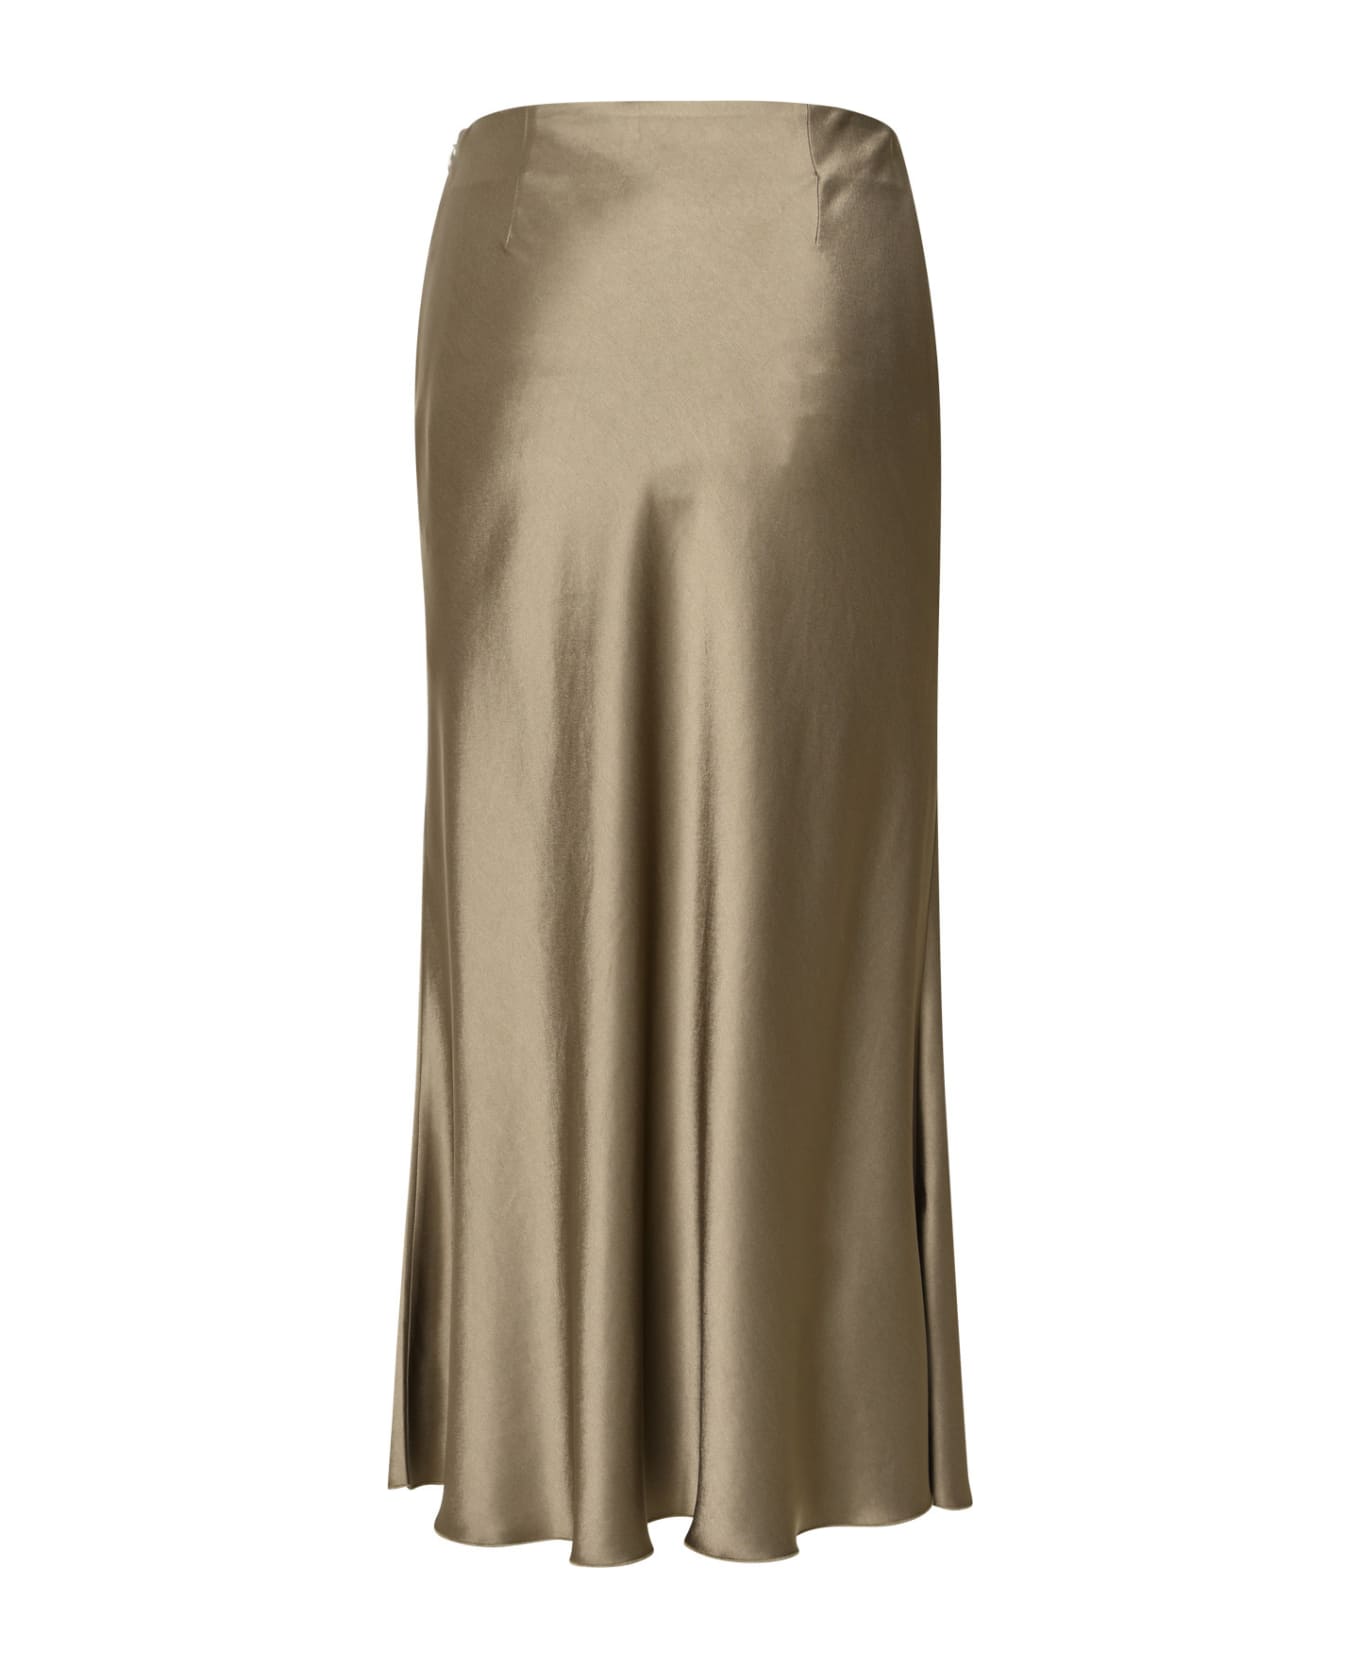 Nanushka 'razi' Skirt In Brown Acetate Blend - Beige